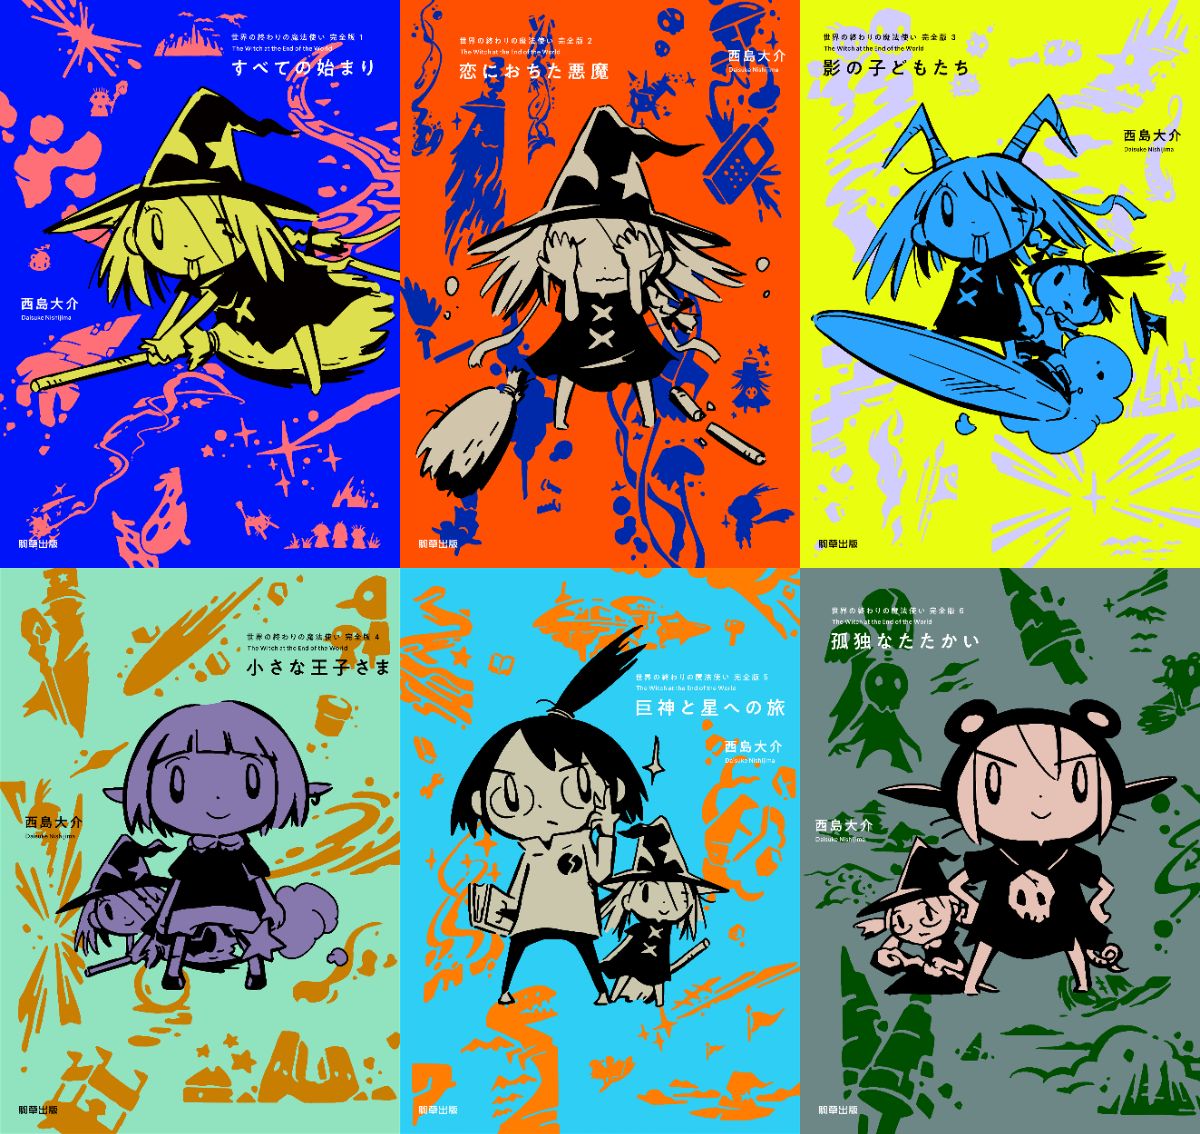 漫画家 西島大介の代表作 世界の終わりの魔法使い シリーズが完結 初回特典は肉筆イラスト サインの豪華仕様に Real Sound リアルサウンド ブック